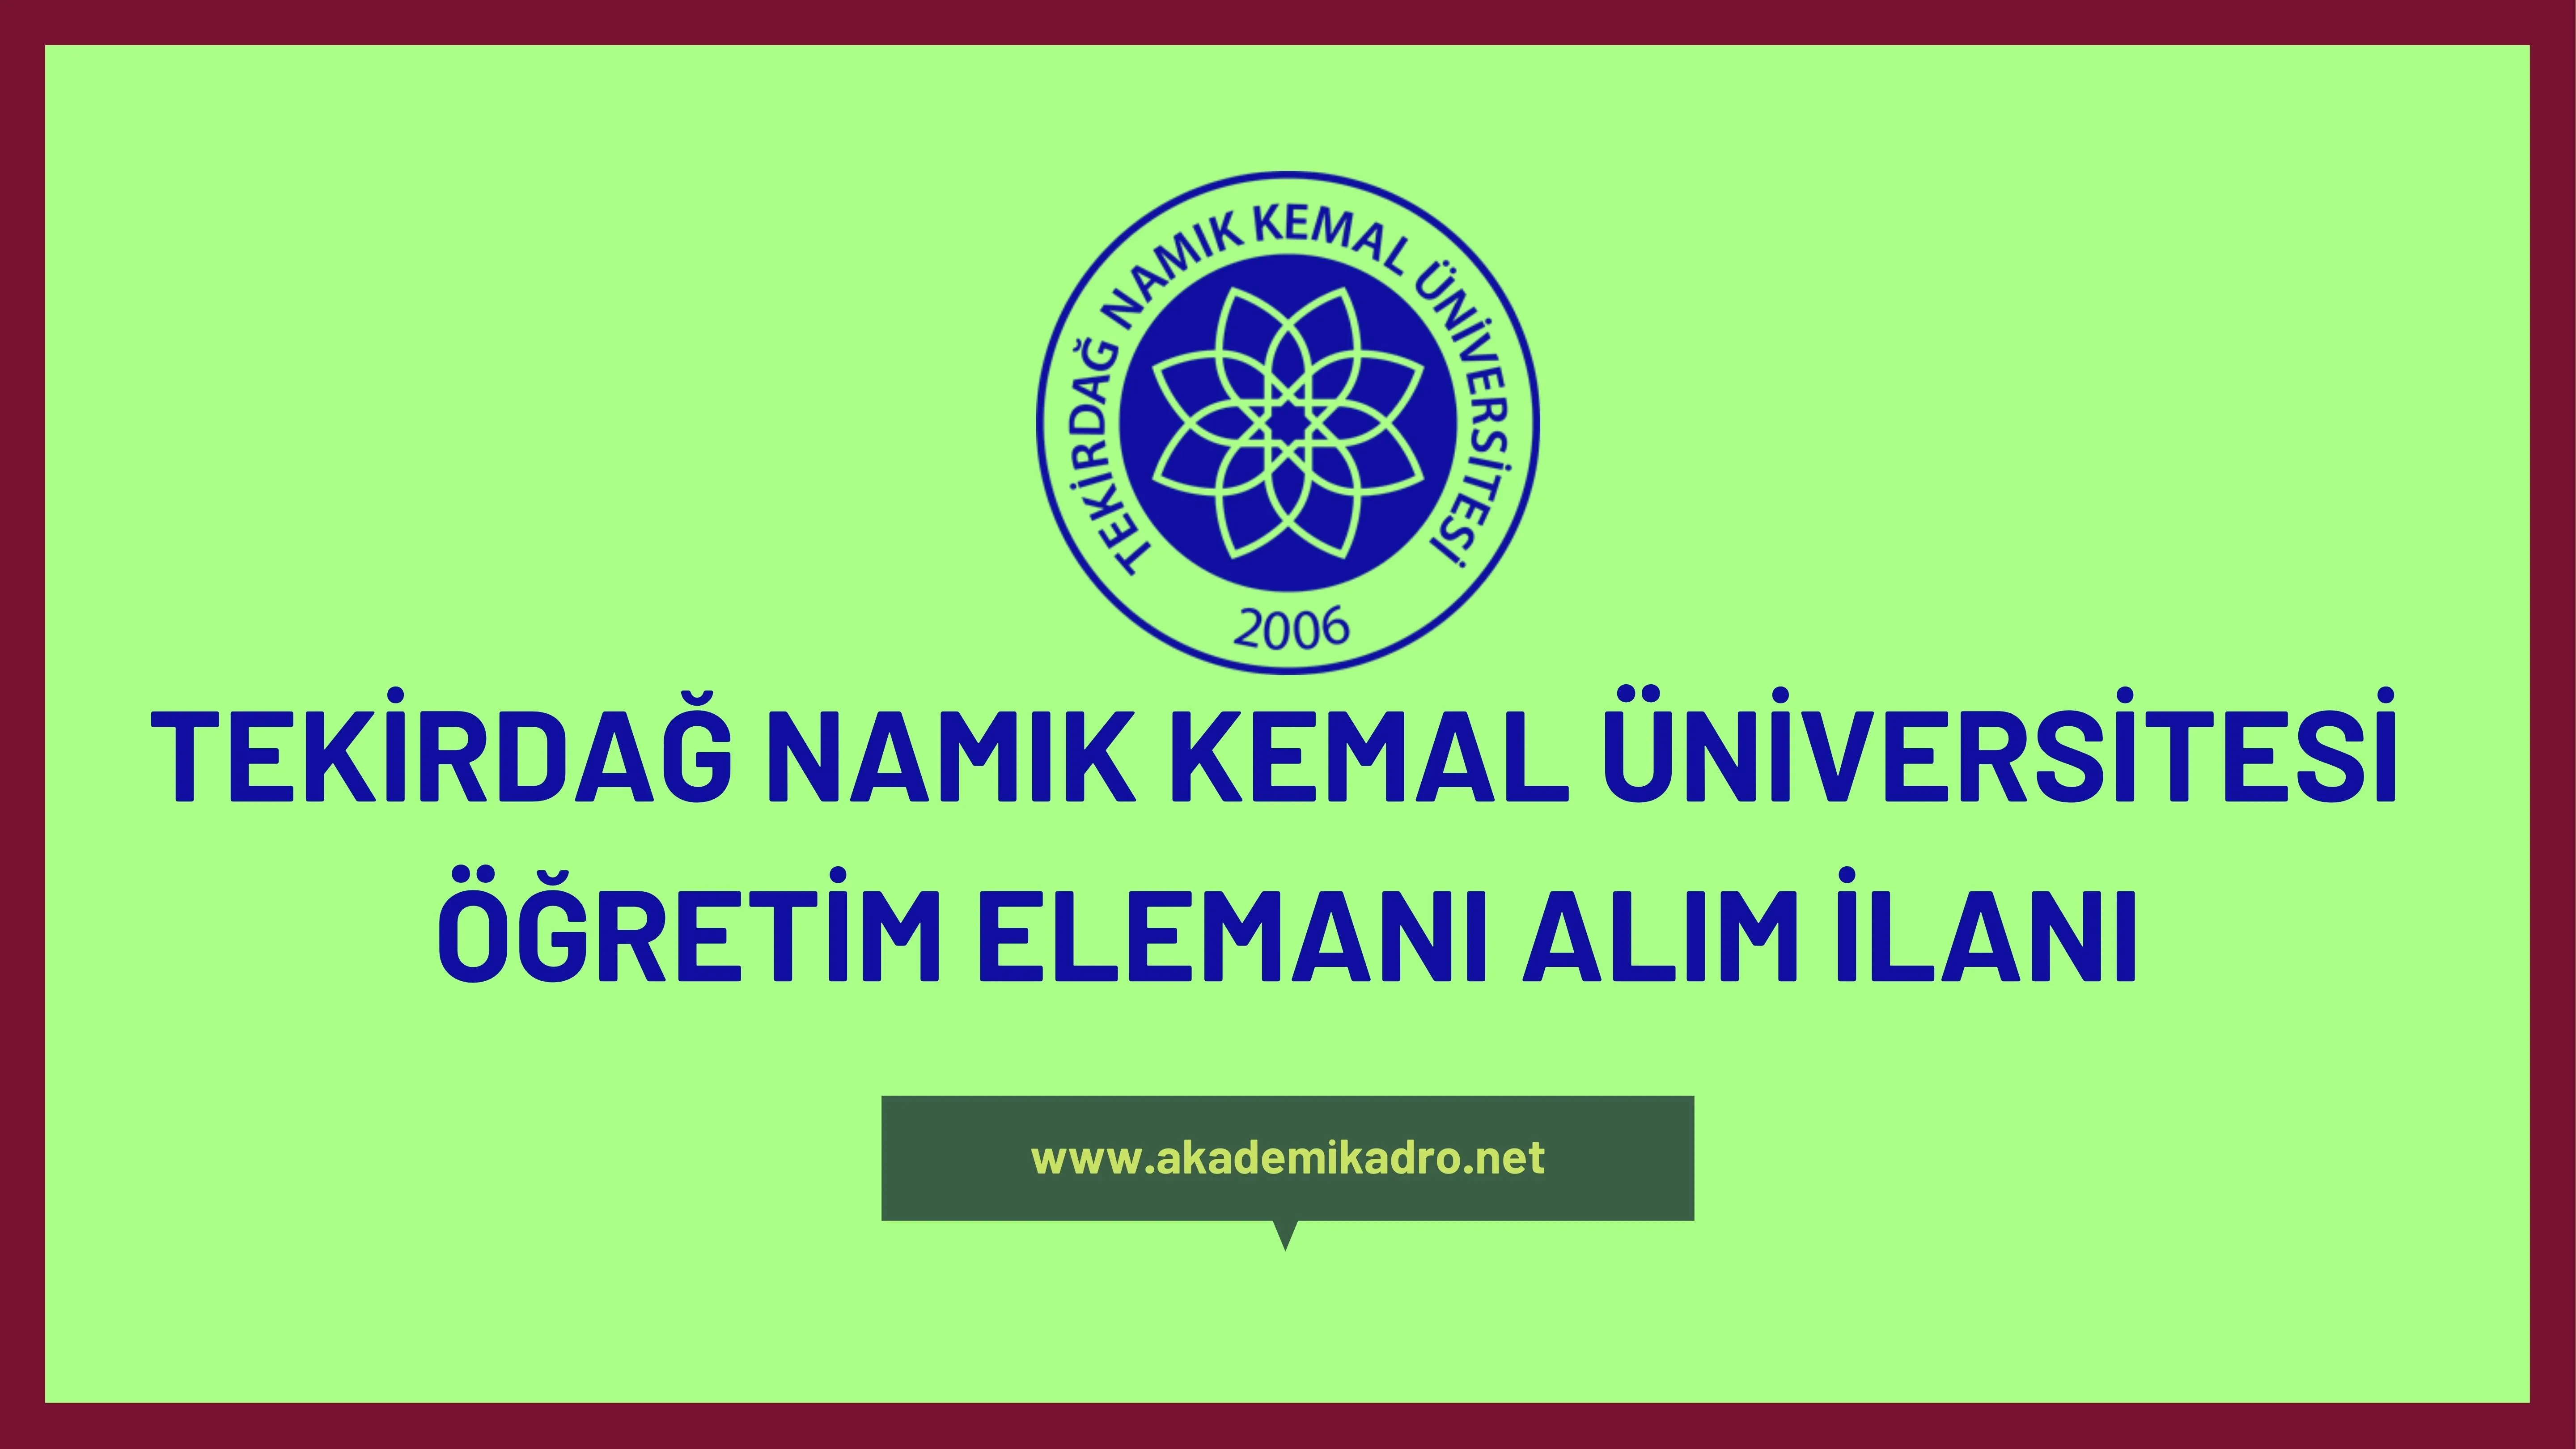 Tekirdağ Namık Kemal Üniversitesi öğretim görevlisi ve öğretim üyesi olmak üzee 42 Öğretim elemanı alacak.